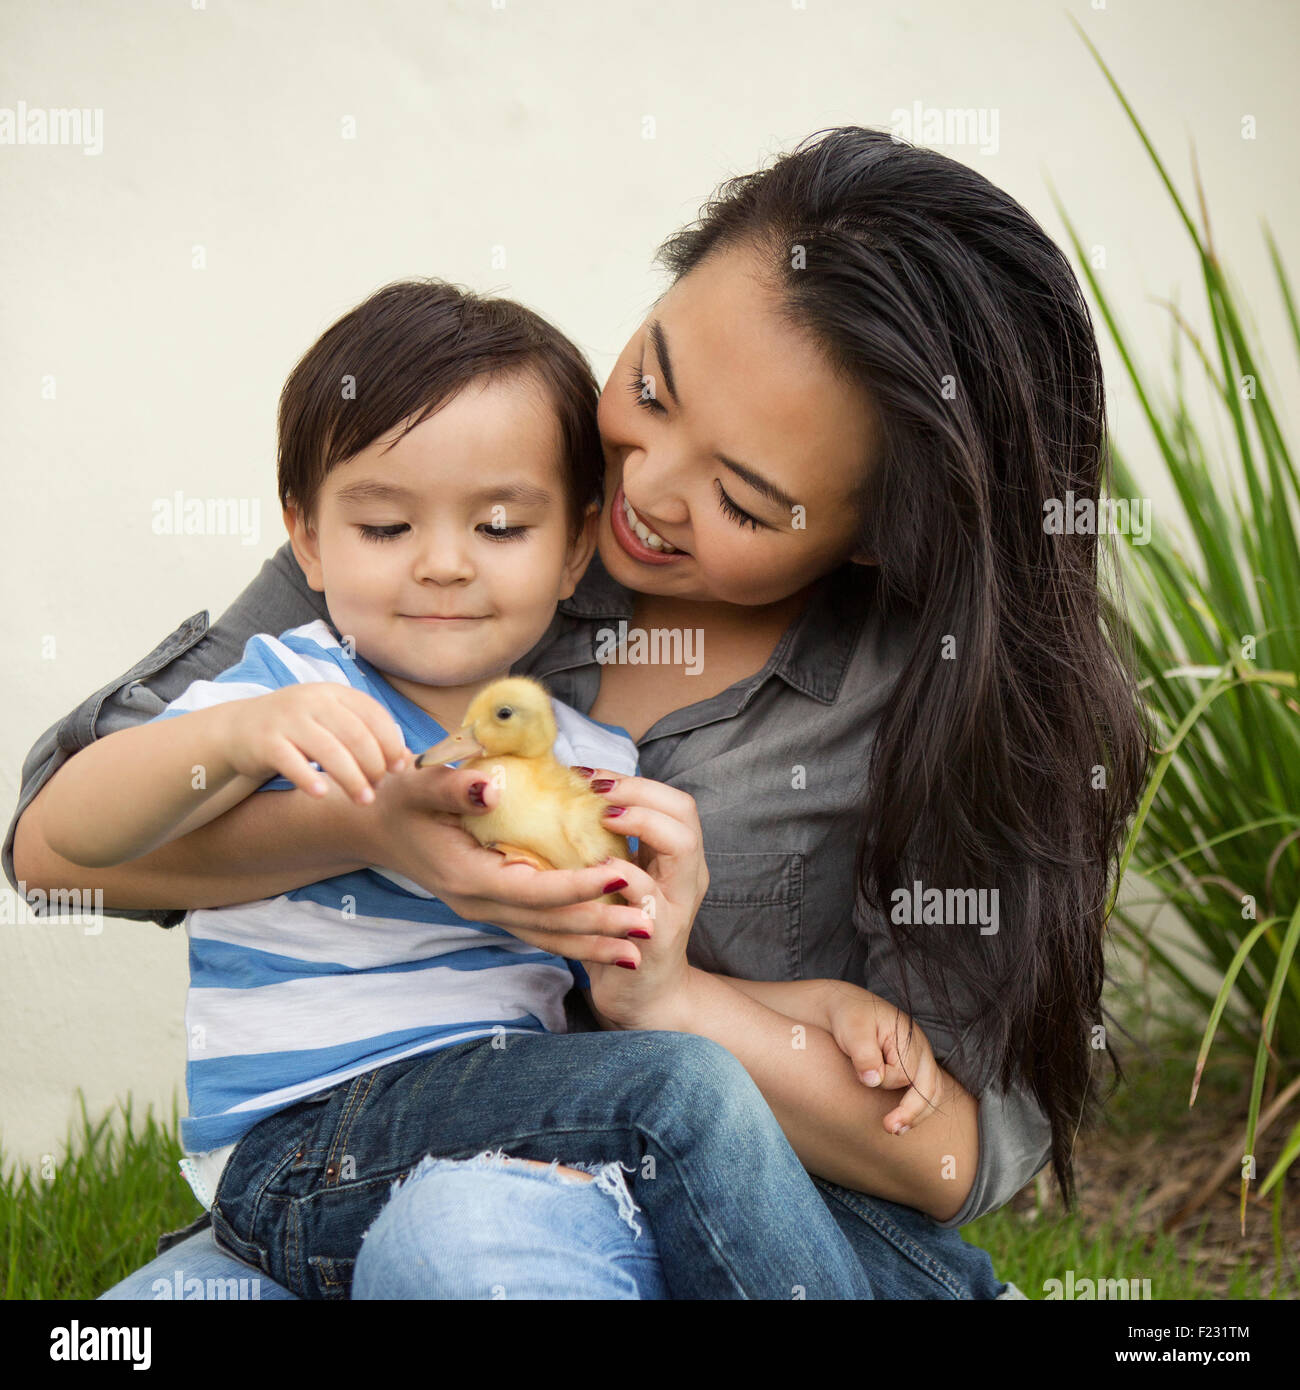 Lächelnde Frau hält eine gelbe Entlein in ihren Händen, ihrem kleinen Sohn beobachten. Stockfoto